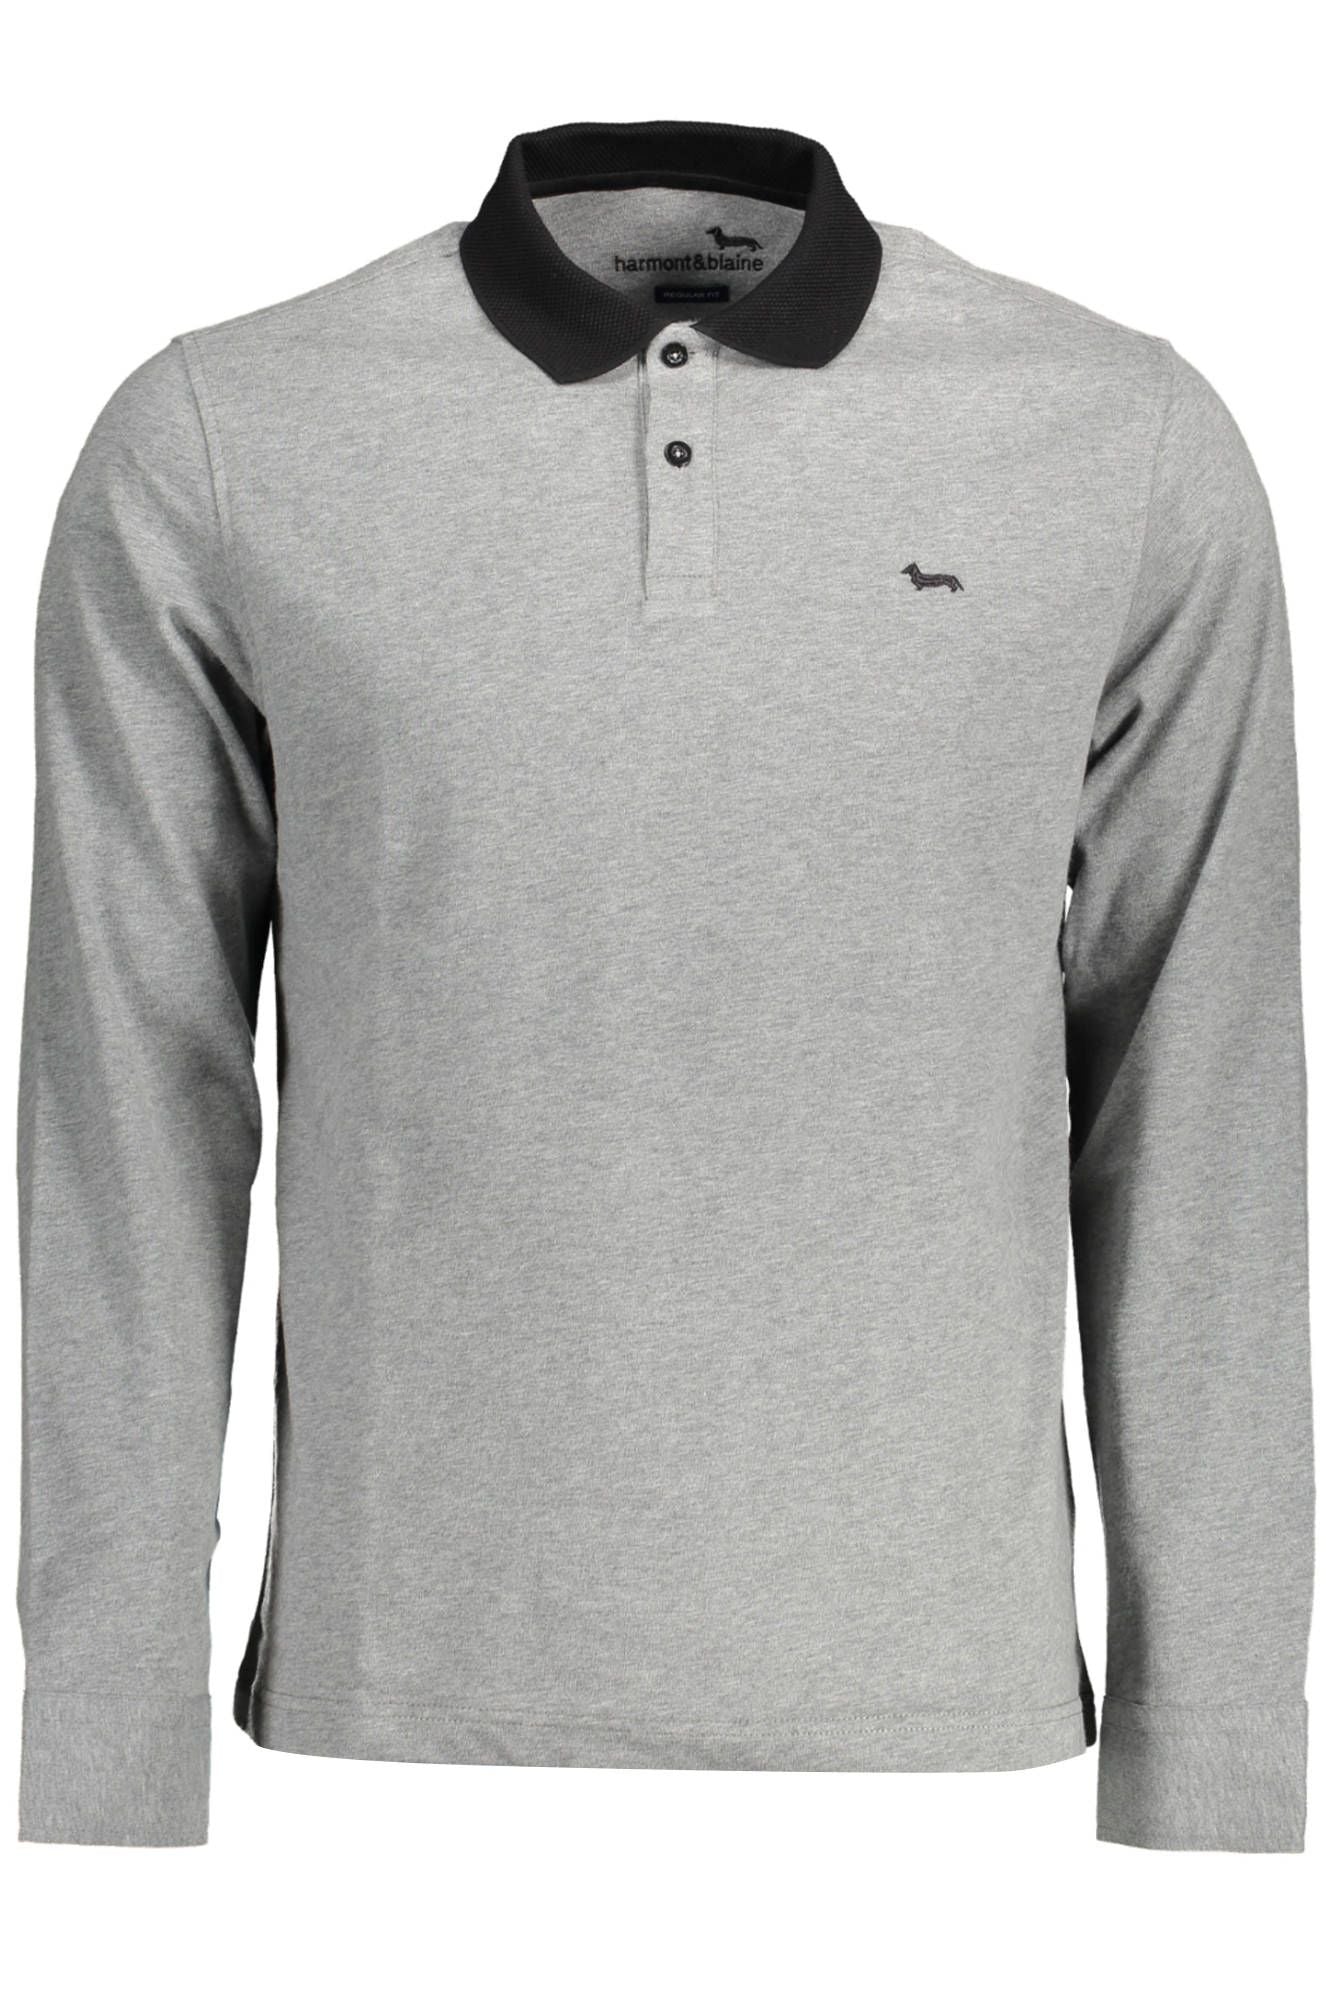 Harmont & Blaine Gray Cotton Polo Shirt